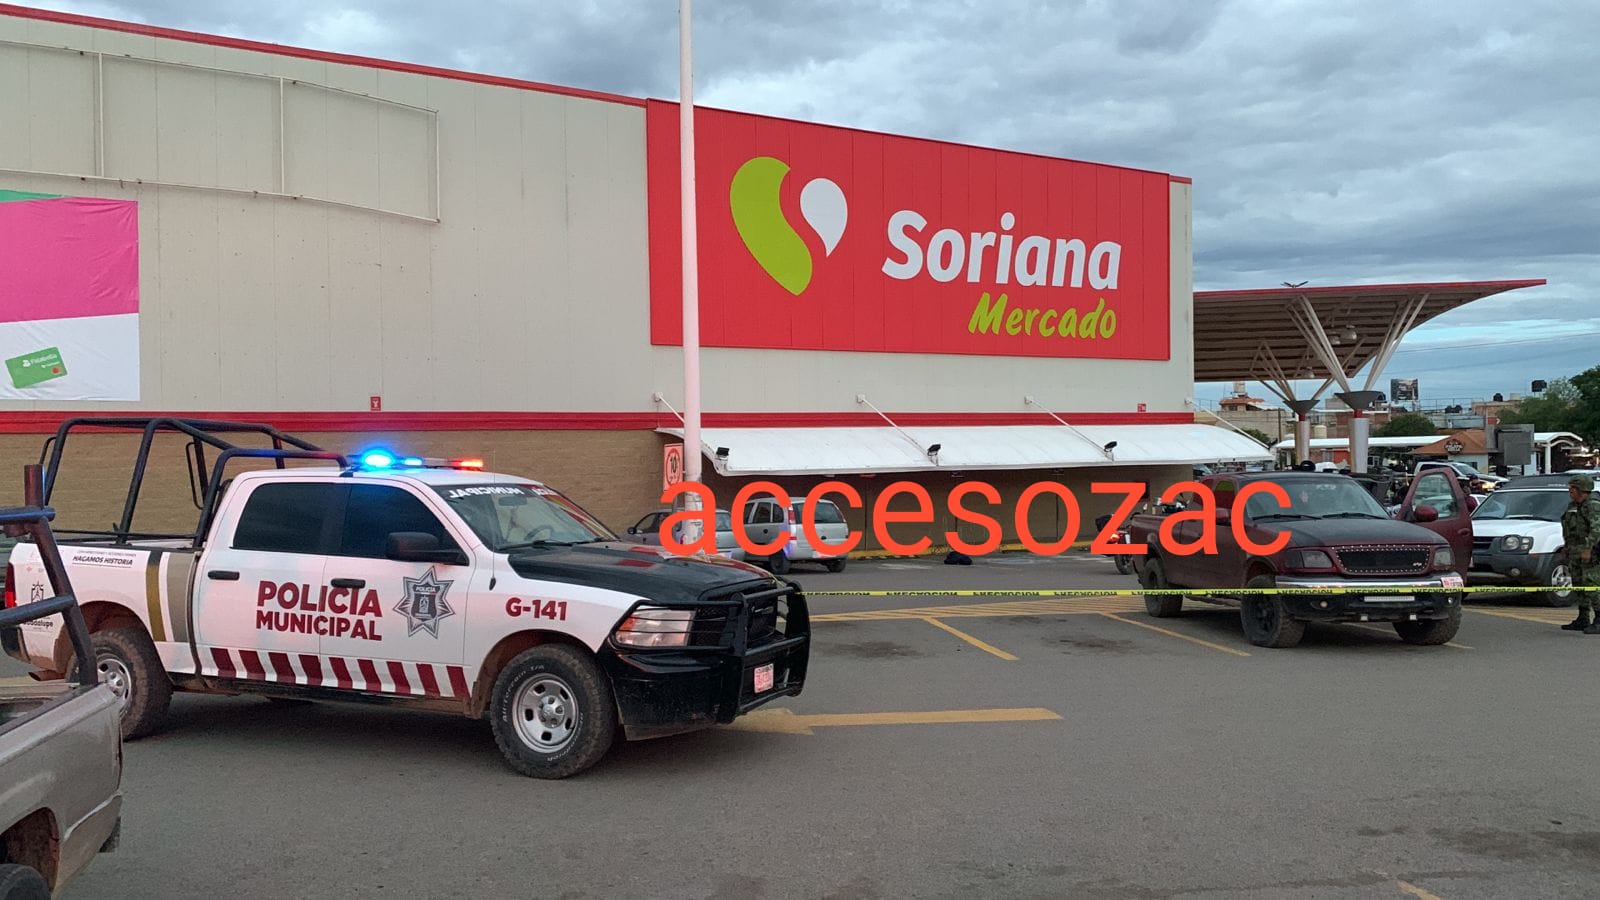 Lee más sobre el artículo Tres policías heridos, y un sicario abatido en el estacionamiento de soriana mercado en Guadalupe.